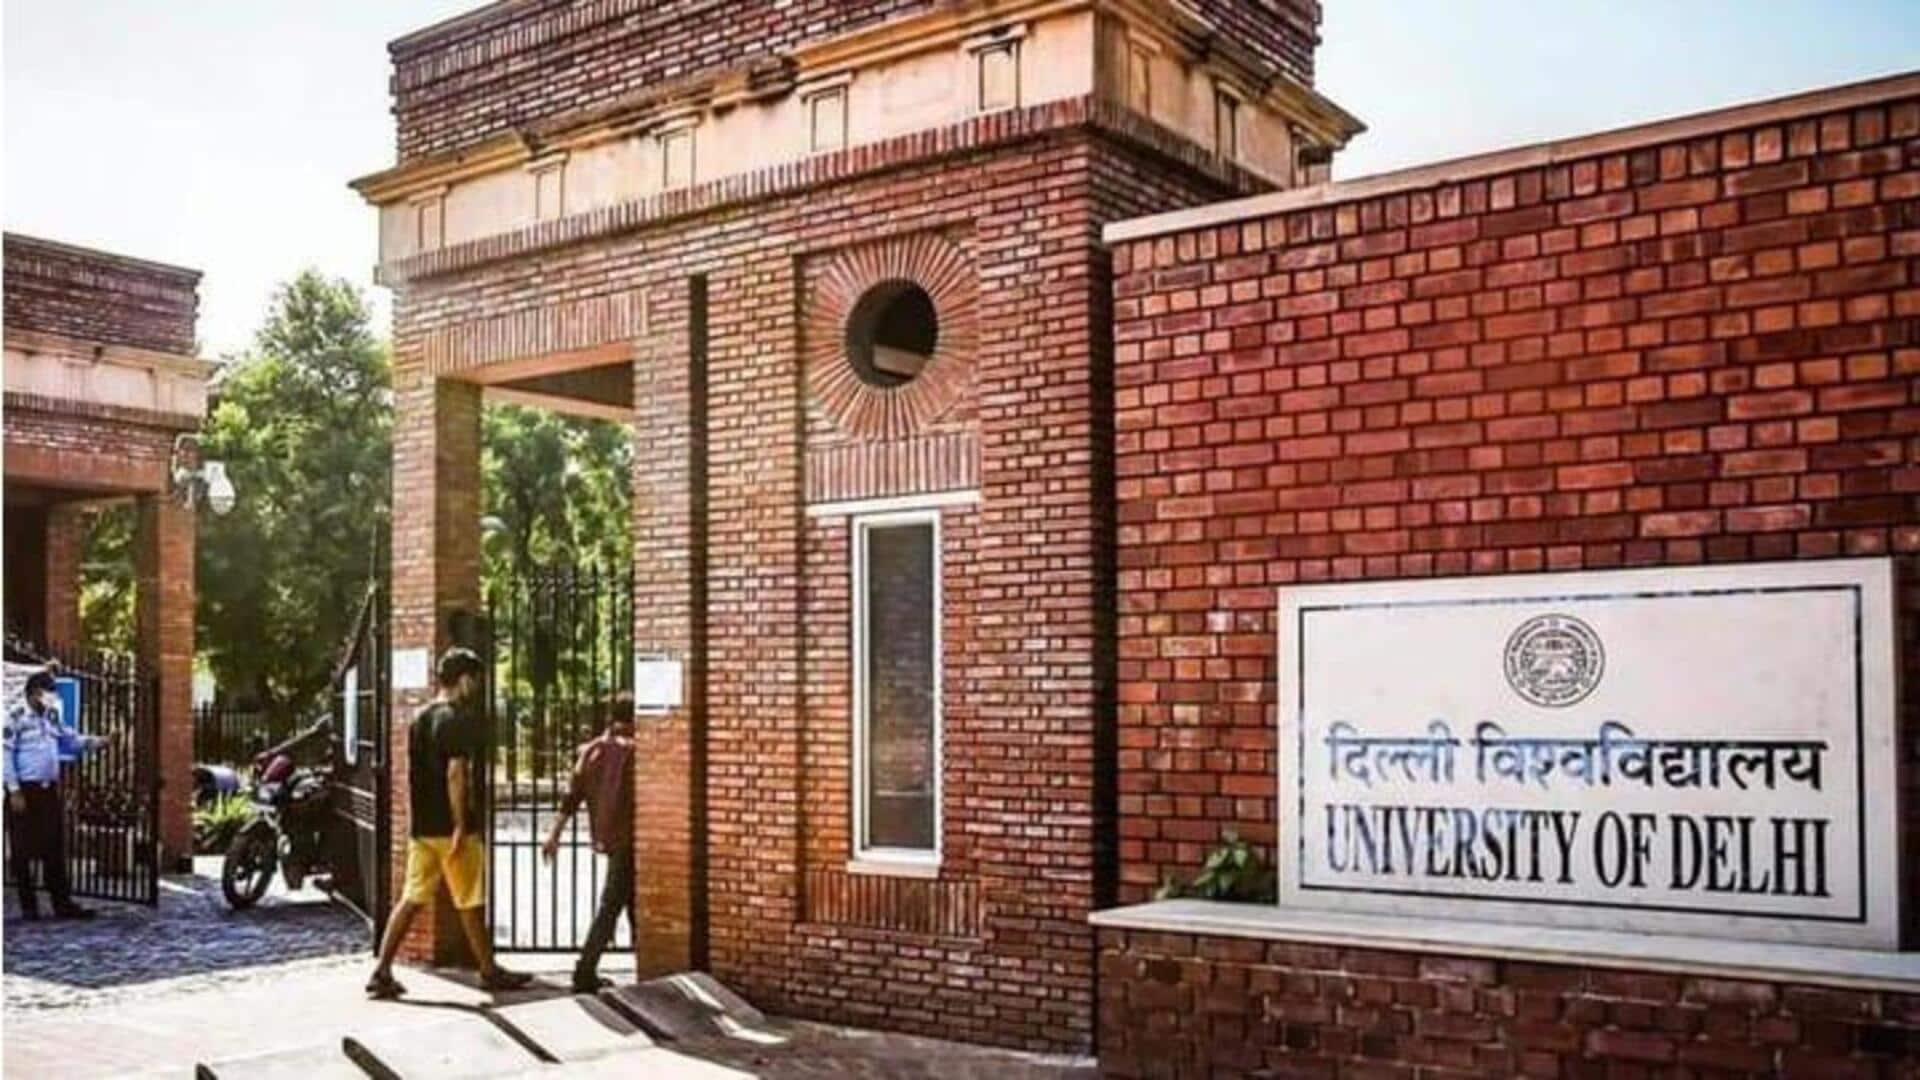 दिल्ली विश्वविद्यालय स्नातकोत्तर कार्यक्रमों में प्रवेश के लिए आज जारी करेगा दूसरी सूची